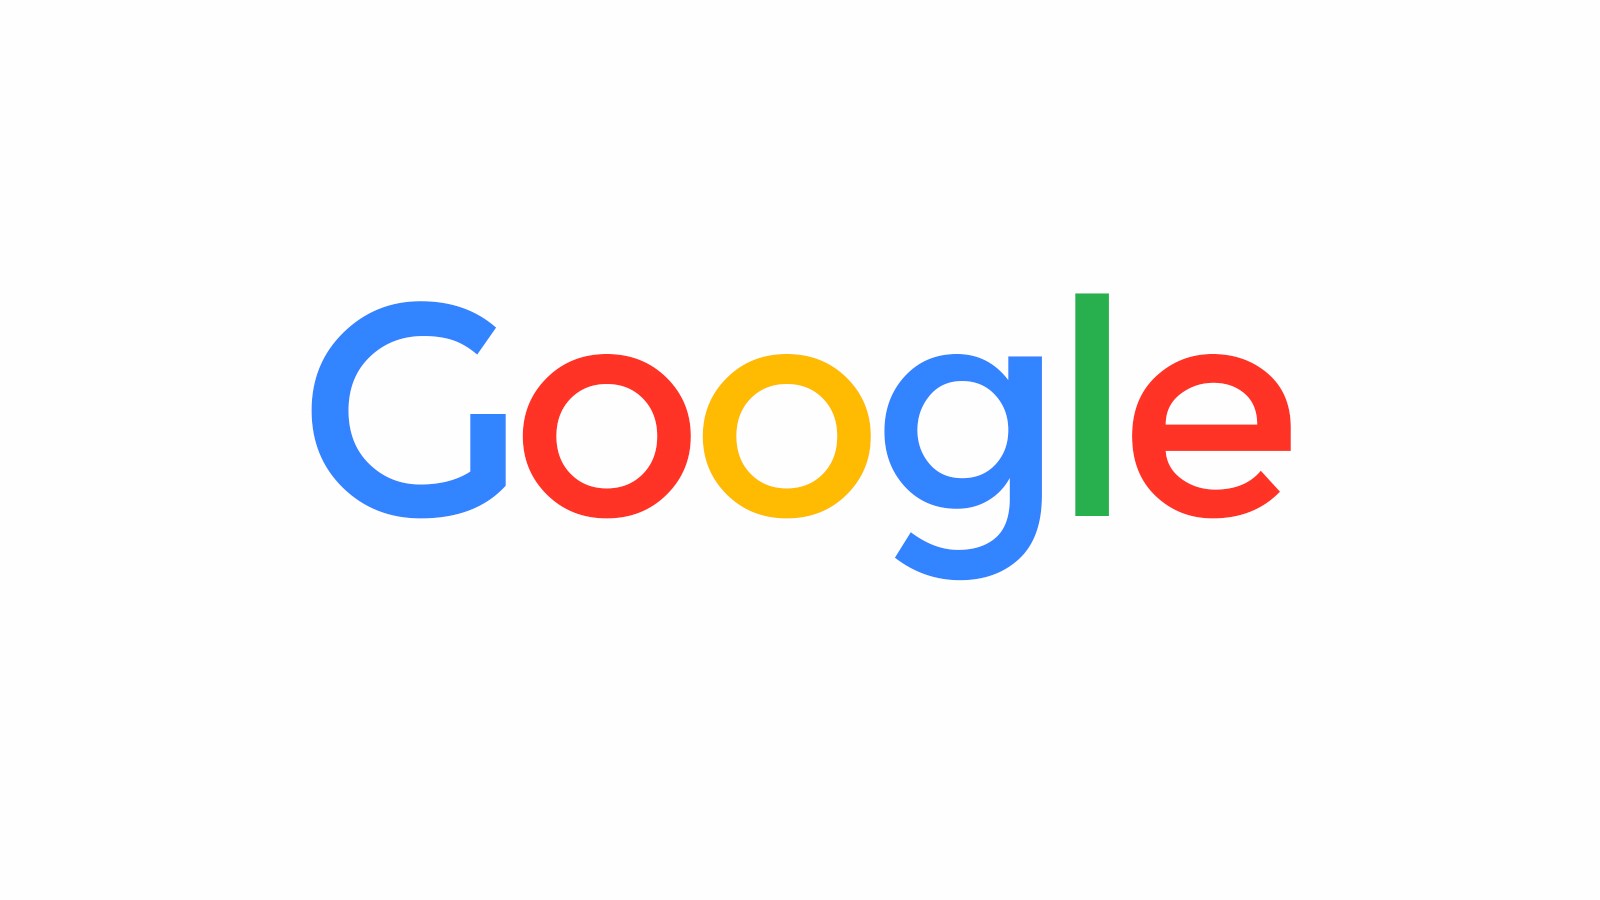 Google slutar visa reklam på högersida